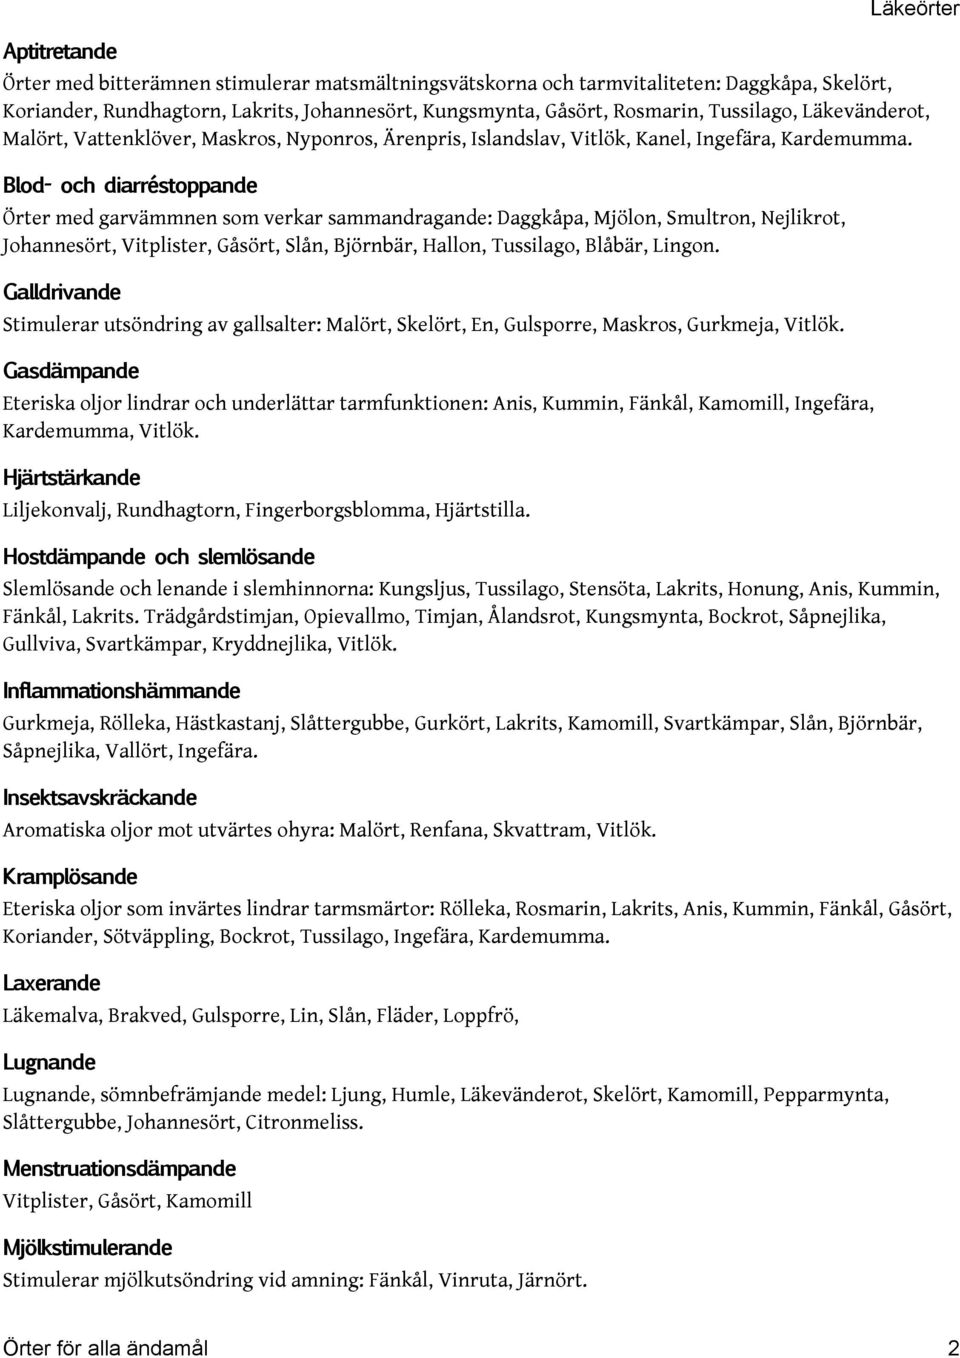 Blod- och diarréstoppande Örter med garvämmnen som verkar sammandragande: Daggkåpa, Mjölon, Smultron, Nejlikrot, Johannesört, Vitplister, Gåsört, Slån, Björnbär, Hallon, Tussilago, Blåbär, Lingon.